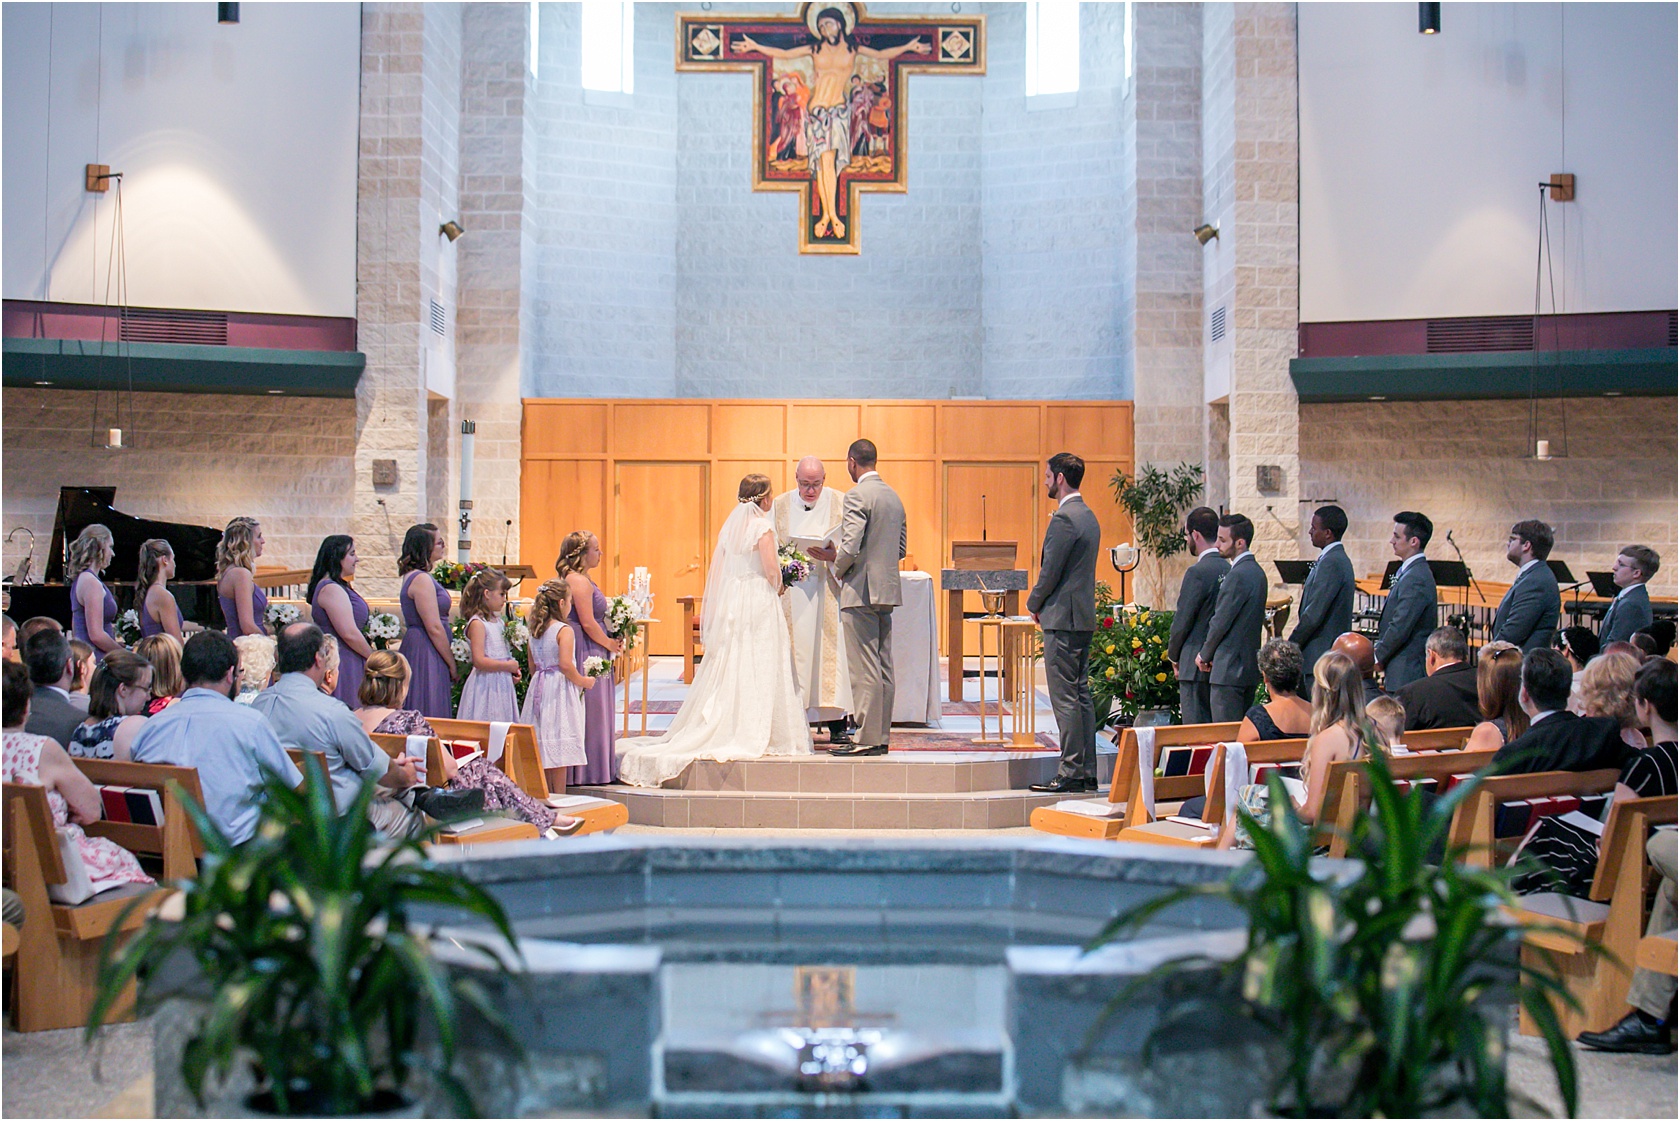 Wesley Holy Family Catholic Community WeddingLivingRadiantPhotographyphotos-5WesleyHolyFamilyCatholicCommunity Wedding Living Radiant Photography photos_0087.jpg